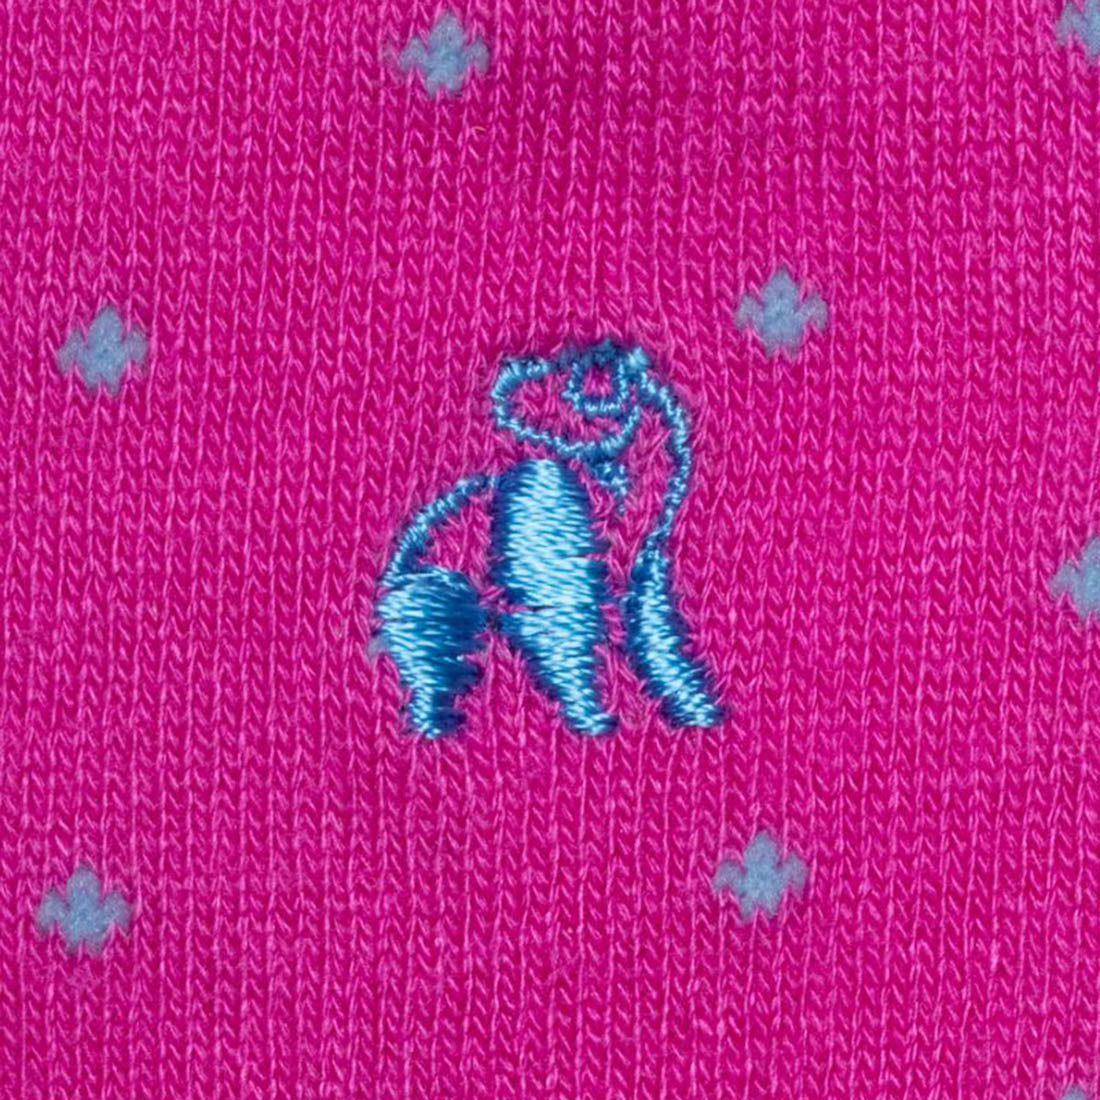 Swole Panda Bamboo Socks - Blue Spotted Pink